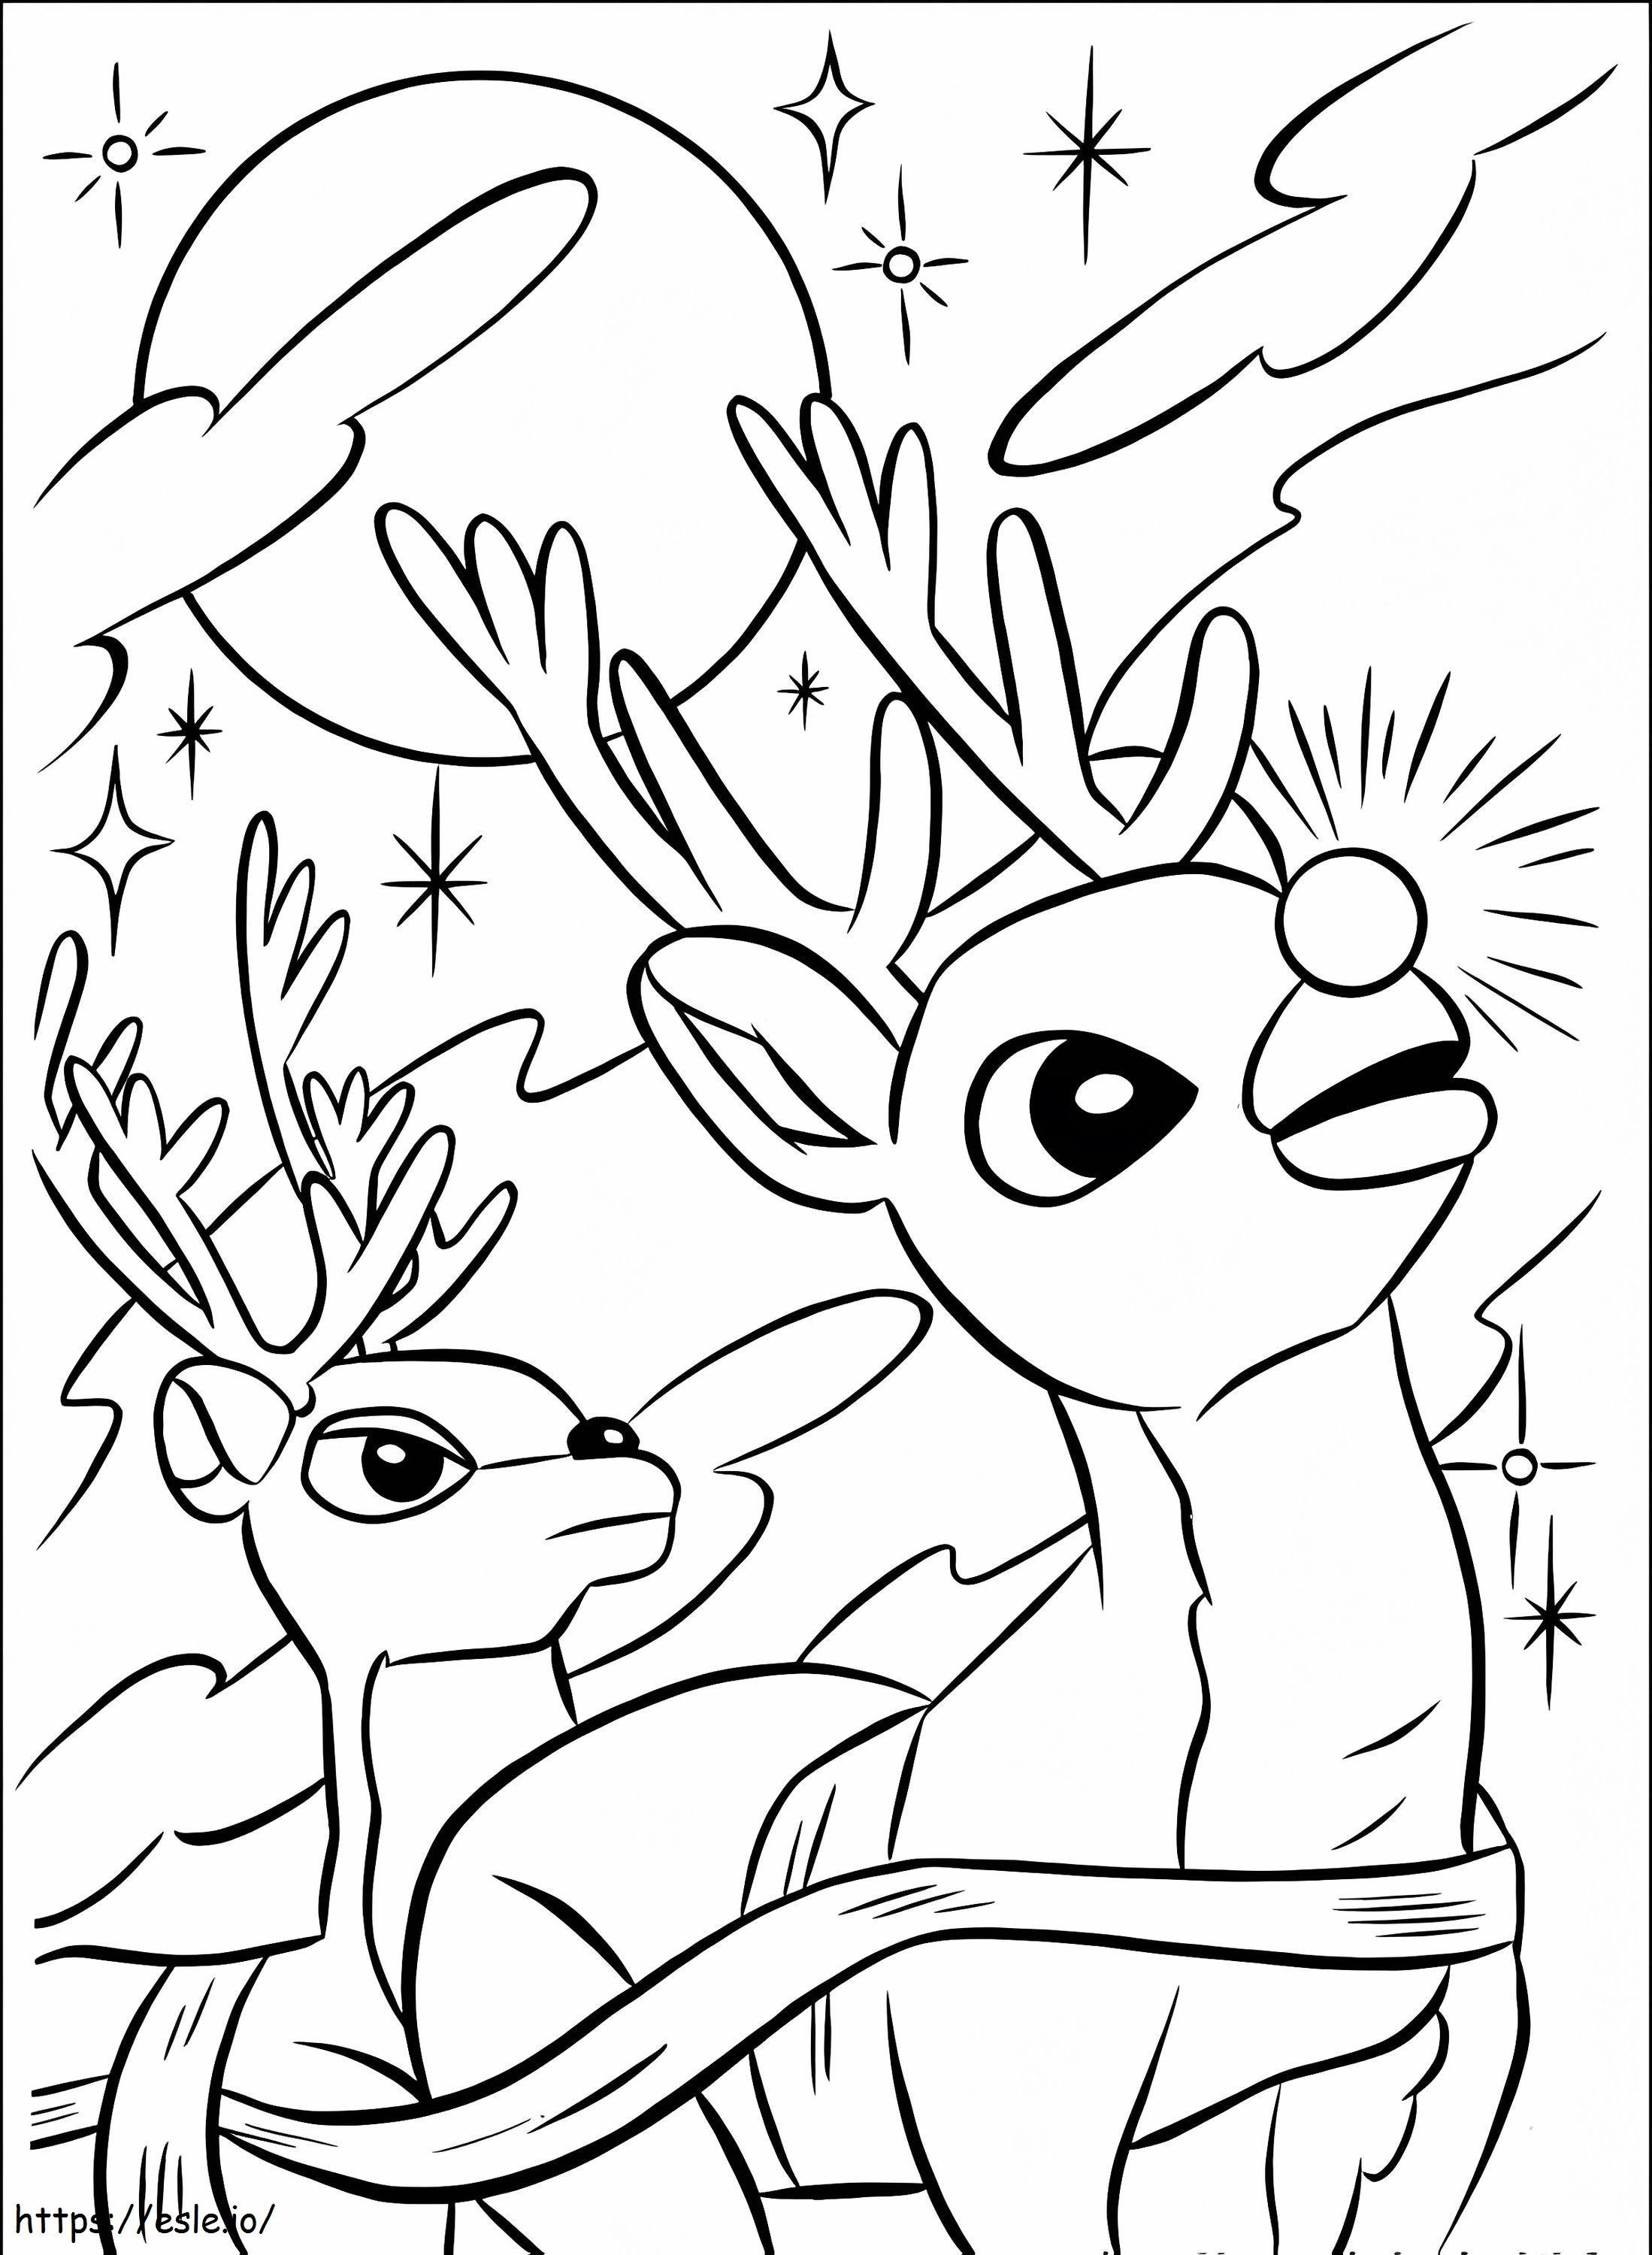 Rudolph e i suoi amici guardano il cielo da colorare